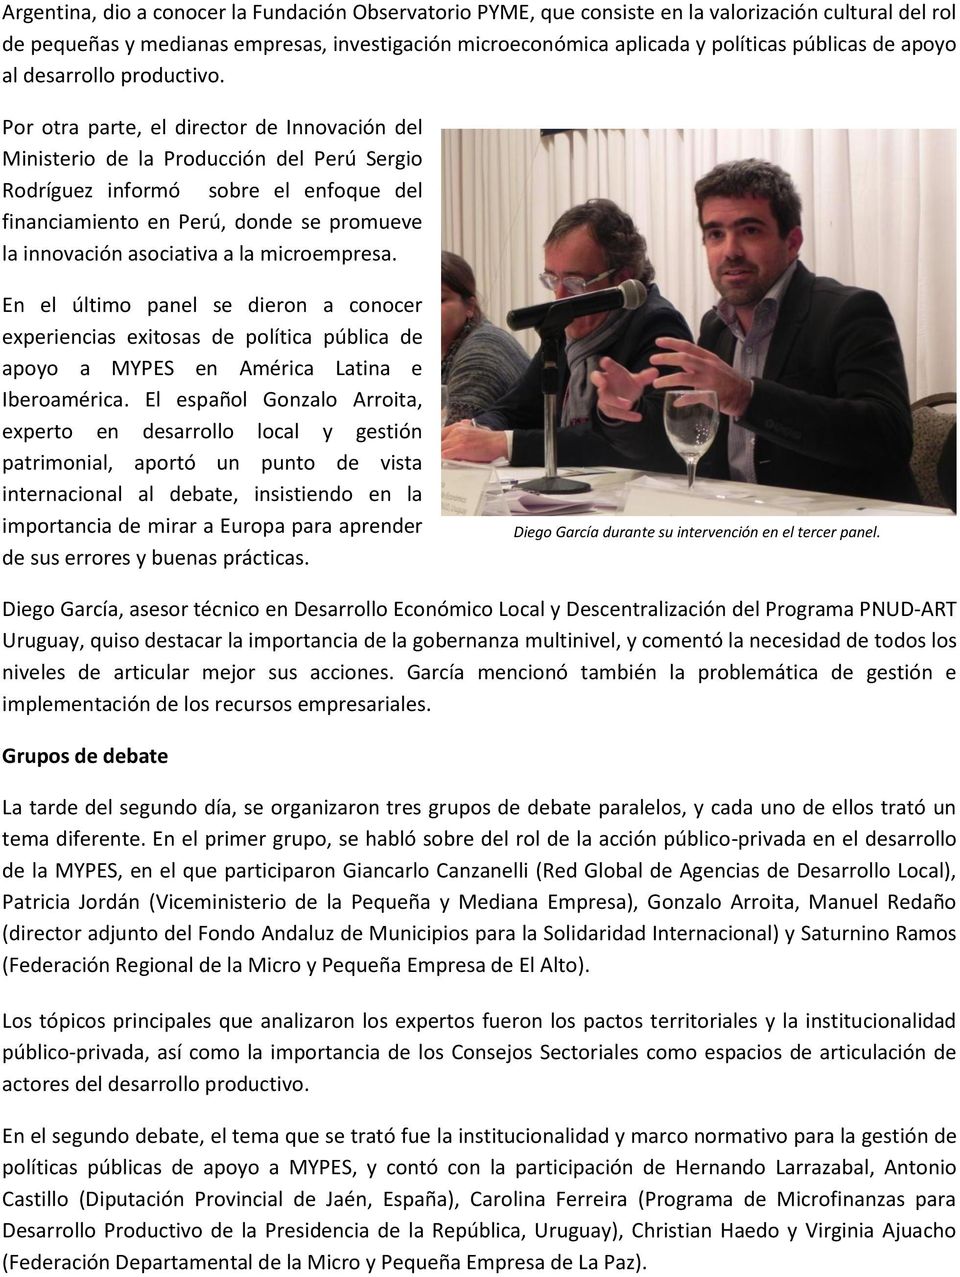 Por otra parte, el director de Innovación del Ministerio de la Producción del Perú Sergio Rodríguez informó sobre el enfoque del financiamiento en Perú, donde se promueve la innovación asociativa a